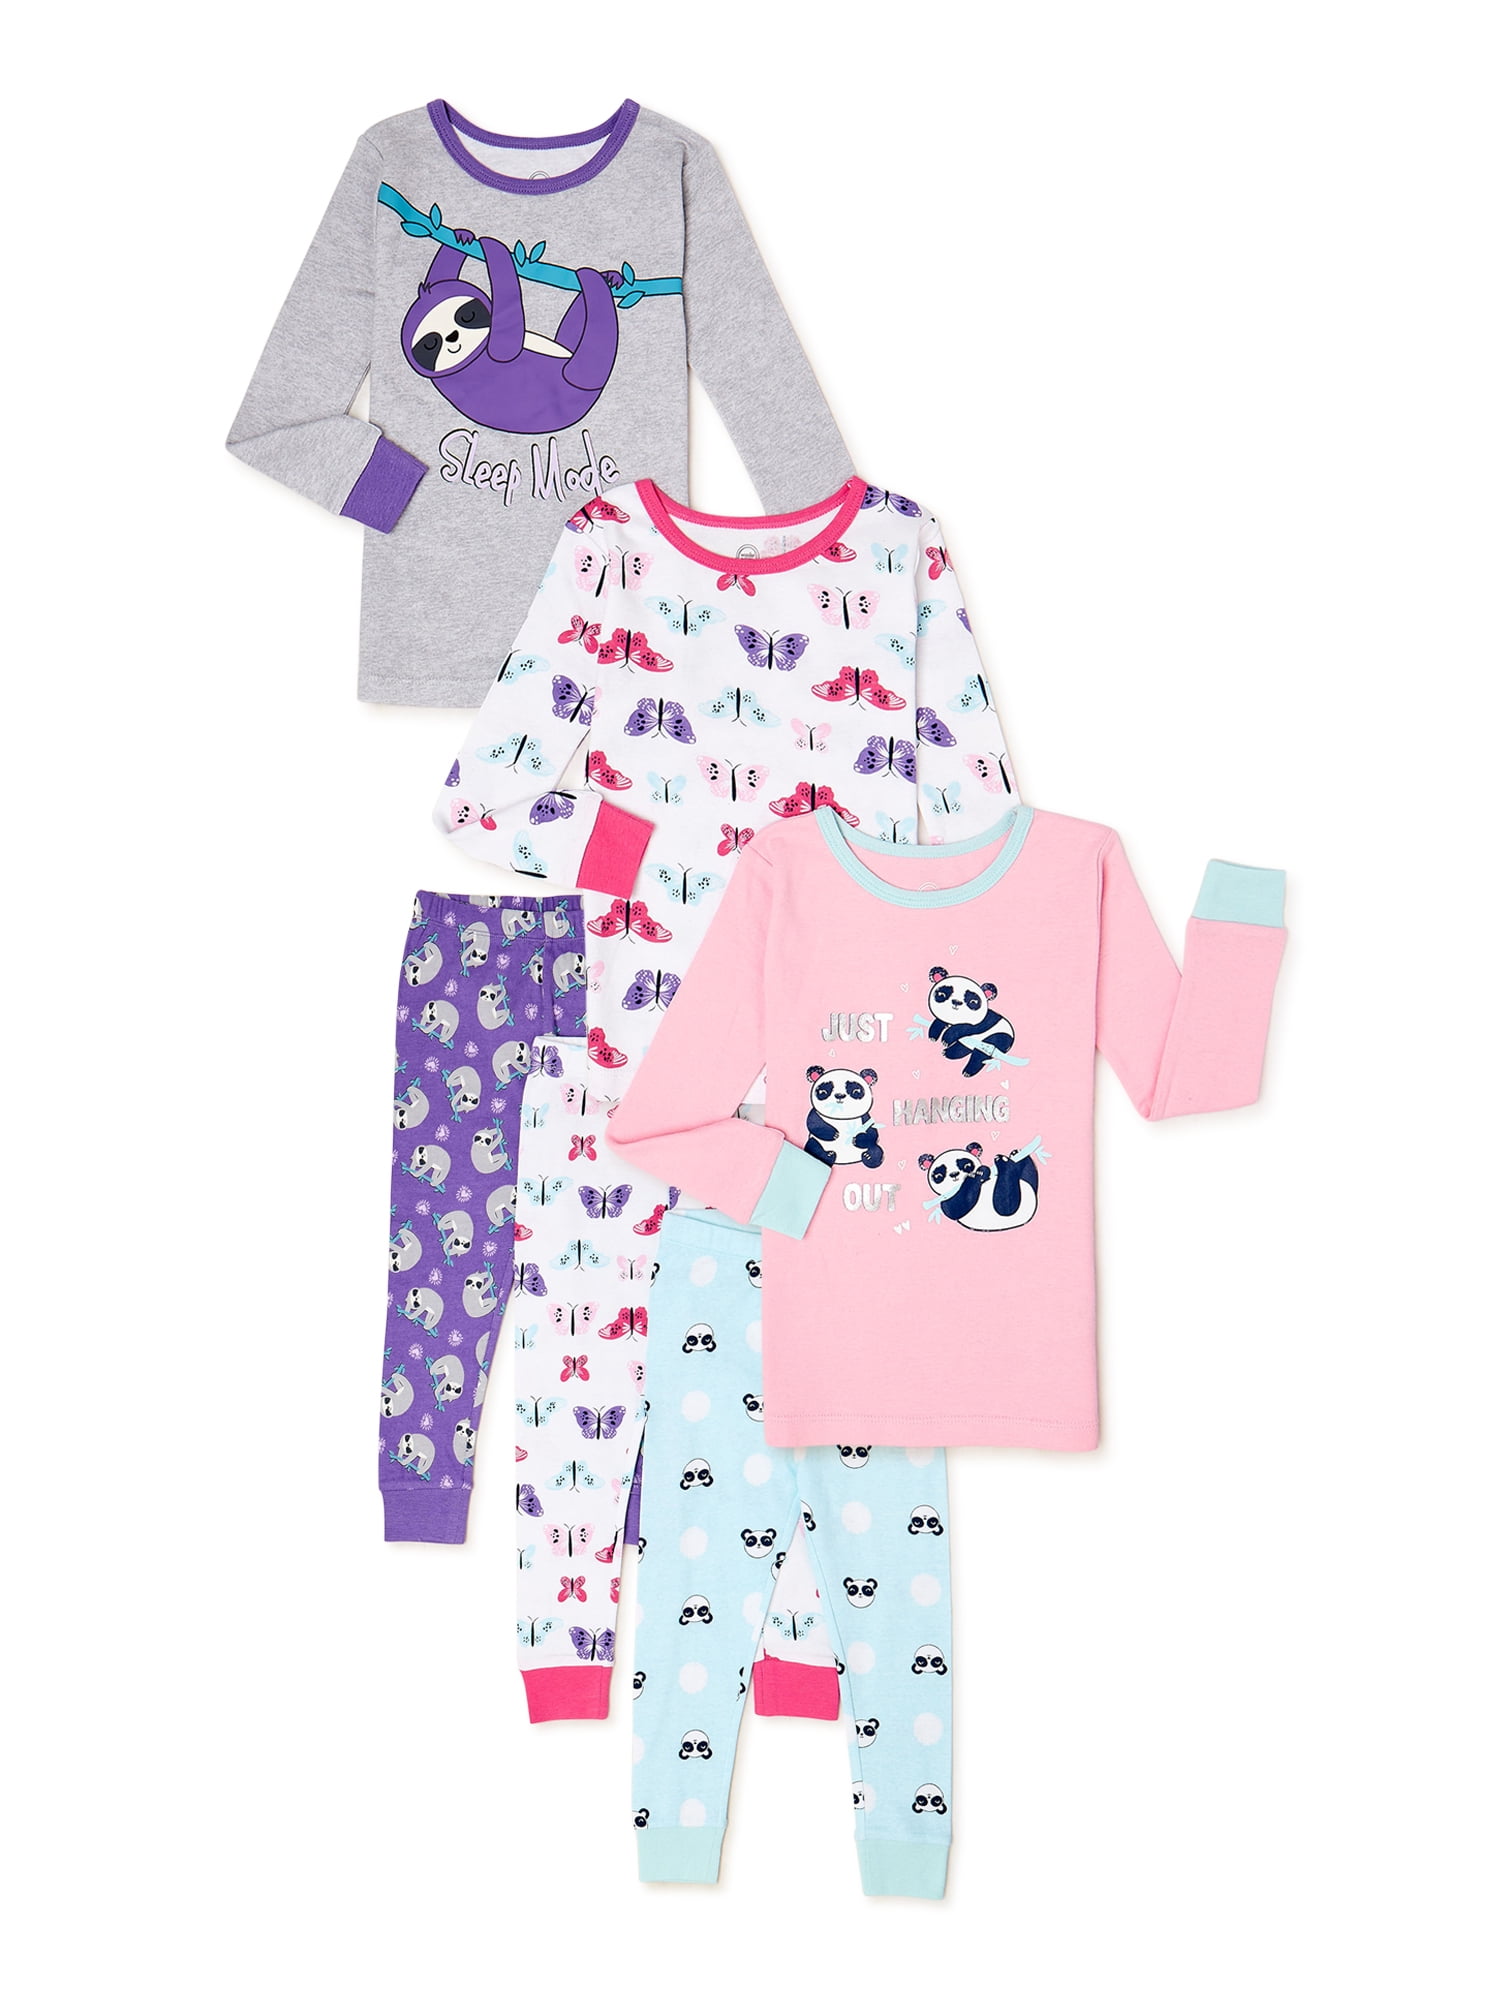 5 Years Girls Baby Toddler Children Bing Long Sleeve Pyjamas pjs Age 12 months 